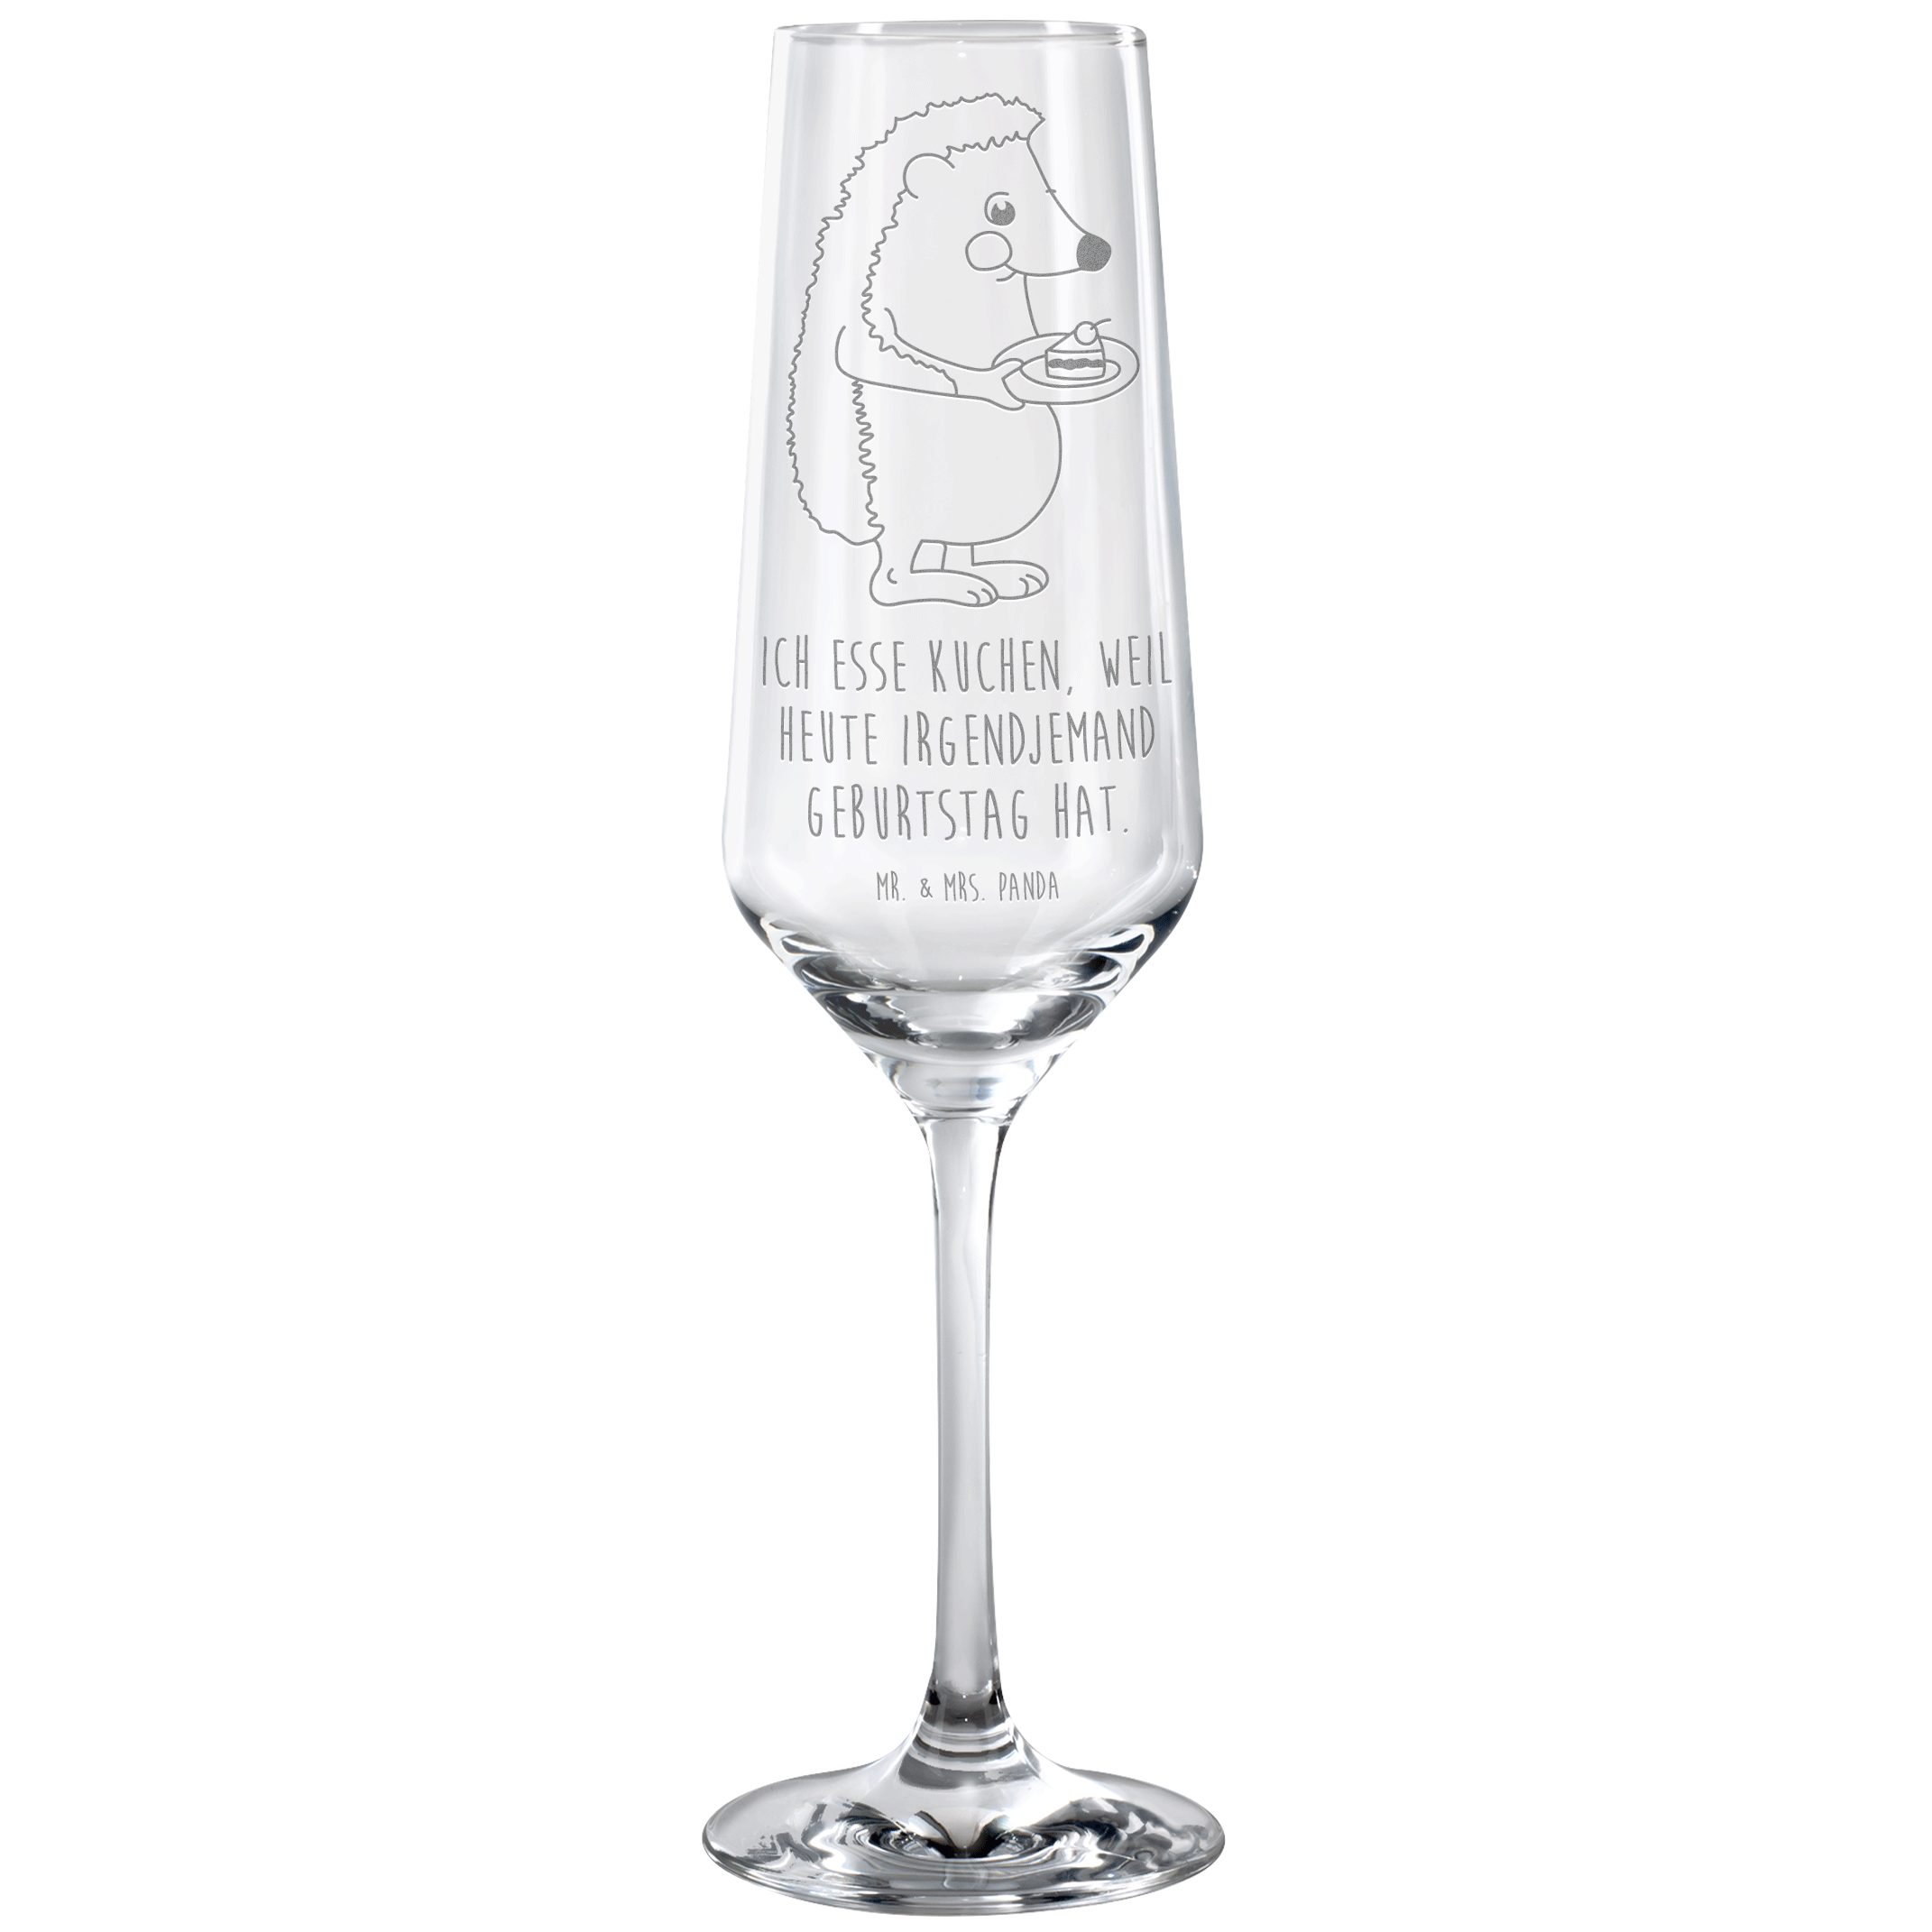 Mr. & Mrs. Panda Sektglas Igel Kuchenstück - Transparent - Geschenk, lustige Sprüche, Spülmasch, Premium Glas, Hochwertige Gravur